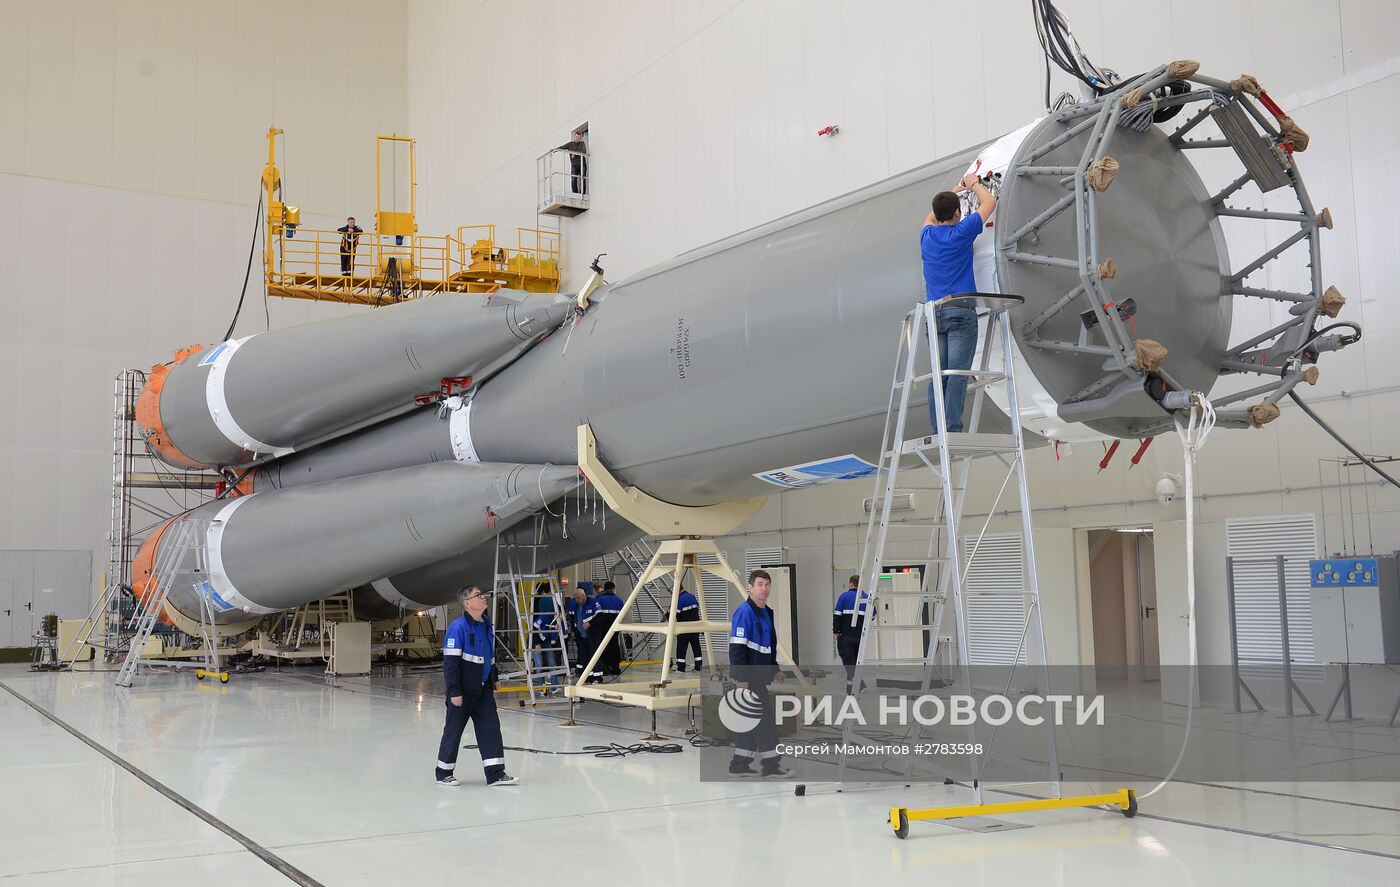 Монтаж ракеты-носителя "Союз-2.1б" на космодроме "Восточный"